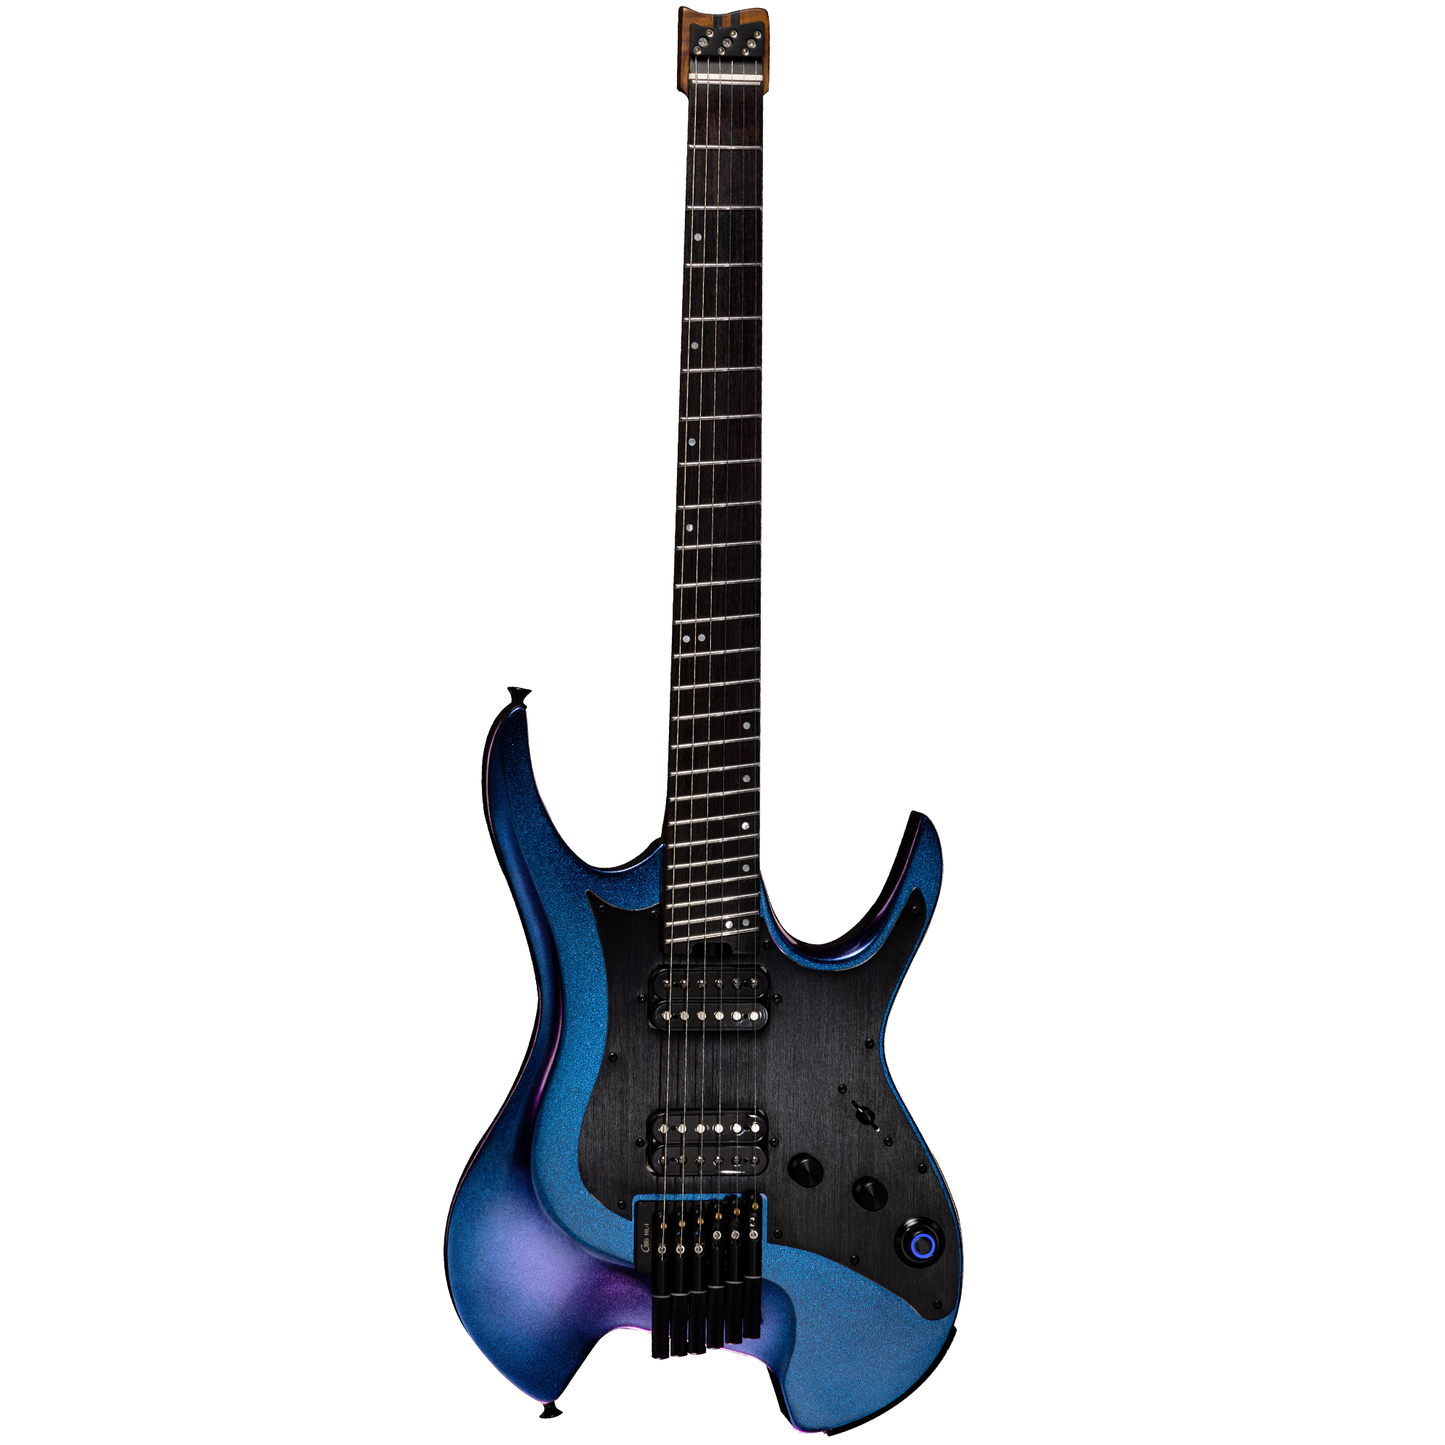 Mooer GTRS W900 'Wing' Intelligent Guitar (Aurora Purple)